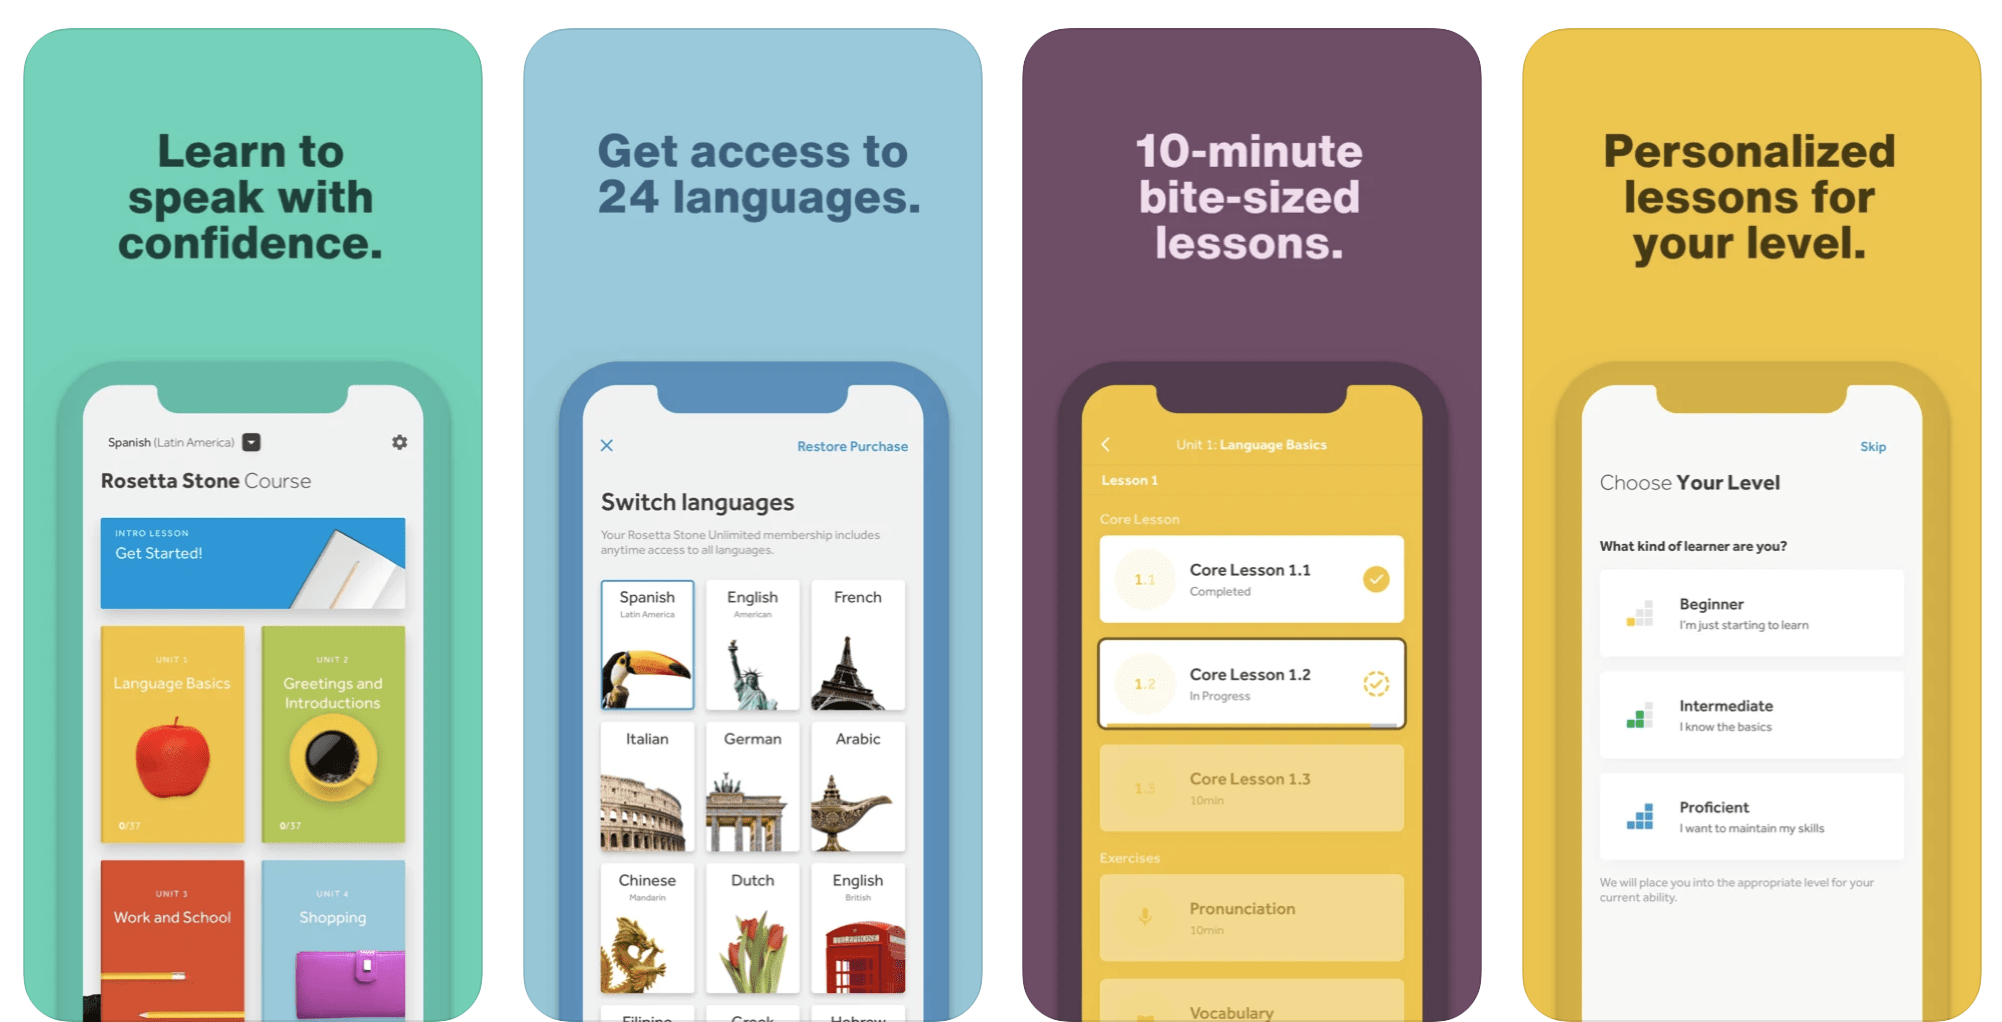 Купить подписку можно приложение. Лучшие приложения для изучения языков. Лучшее приложение для изучения слов. Подписка в приложении. Приложения для изучения языков на айфон 5.